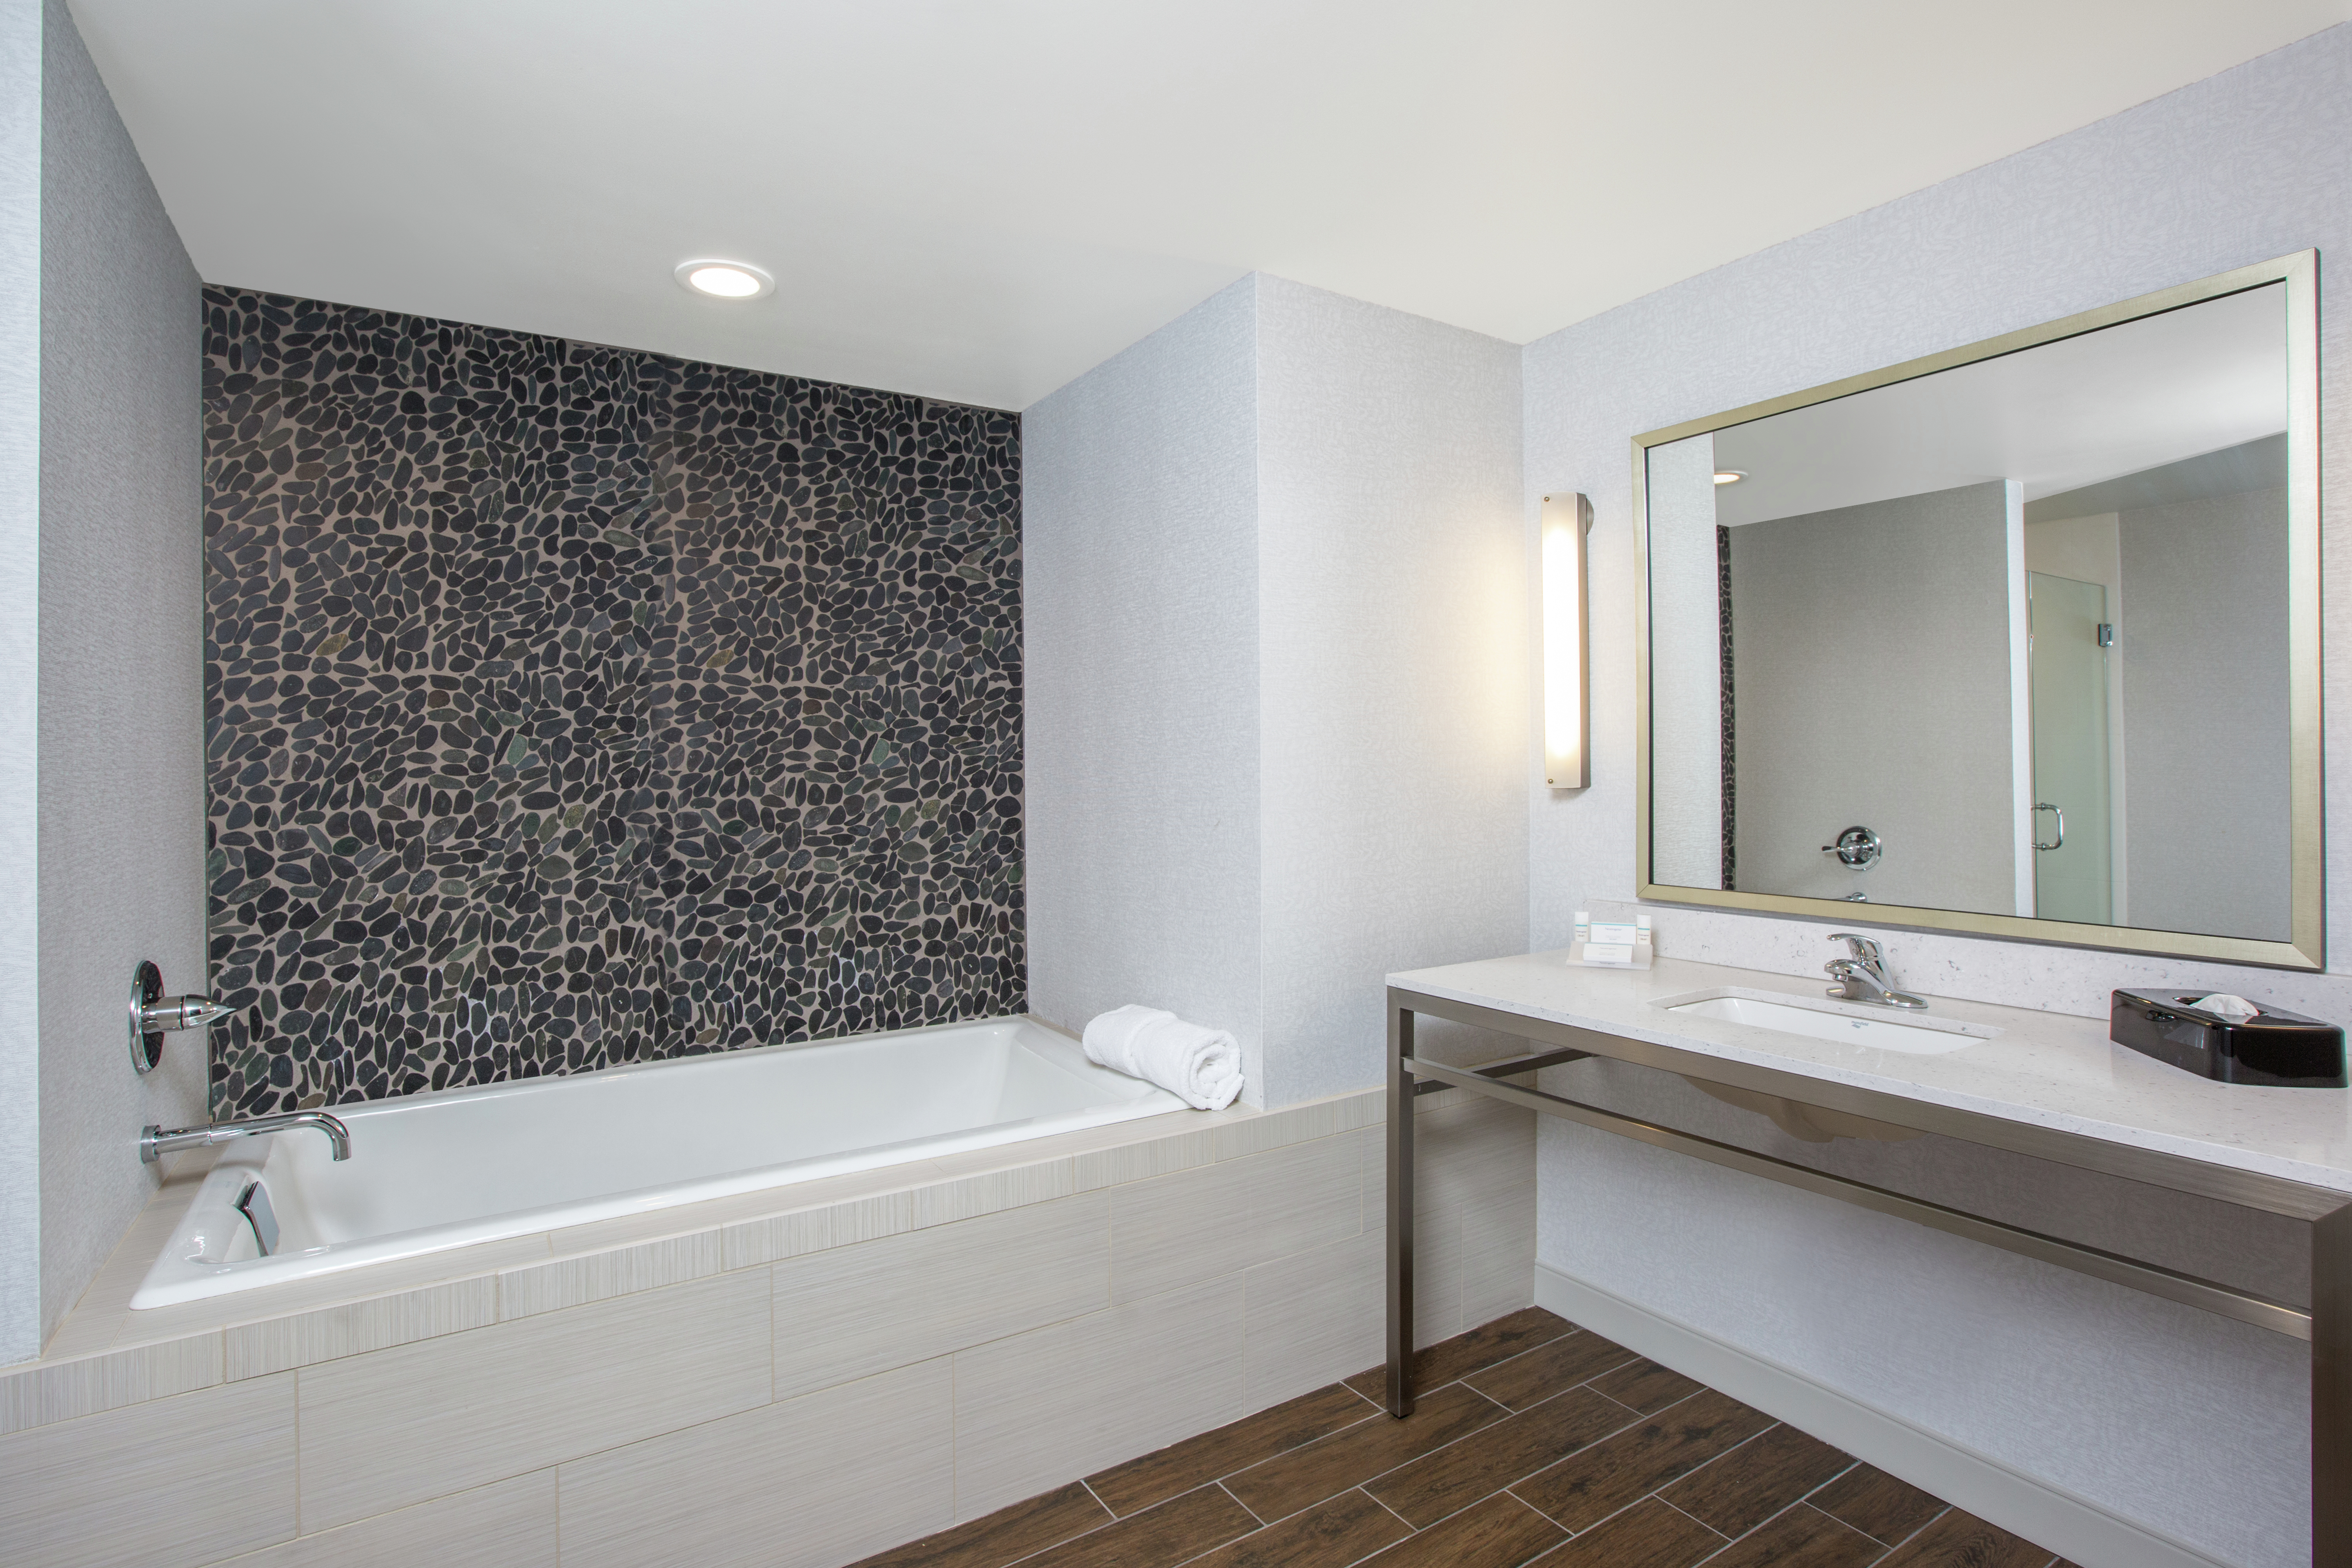 Guest Suite Bathroom Vanity and Tub